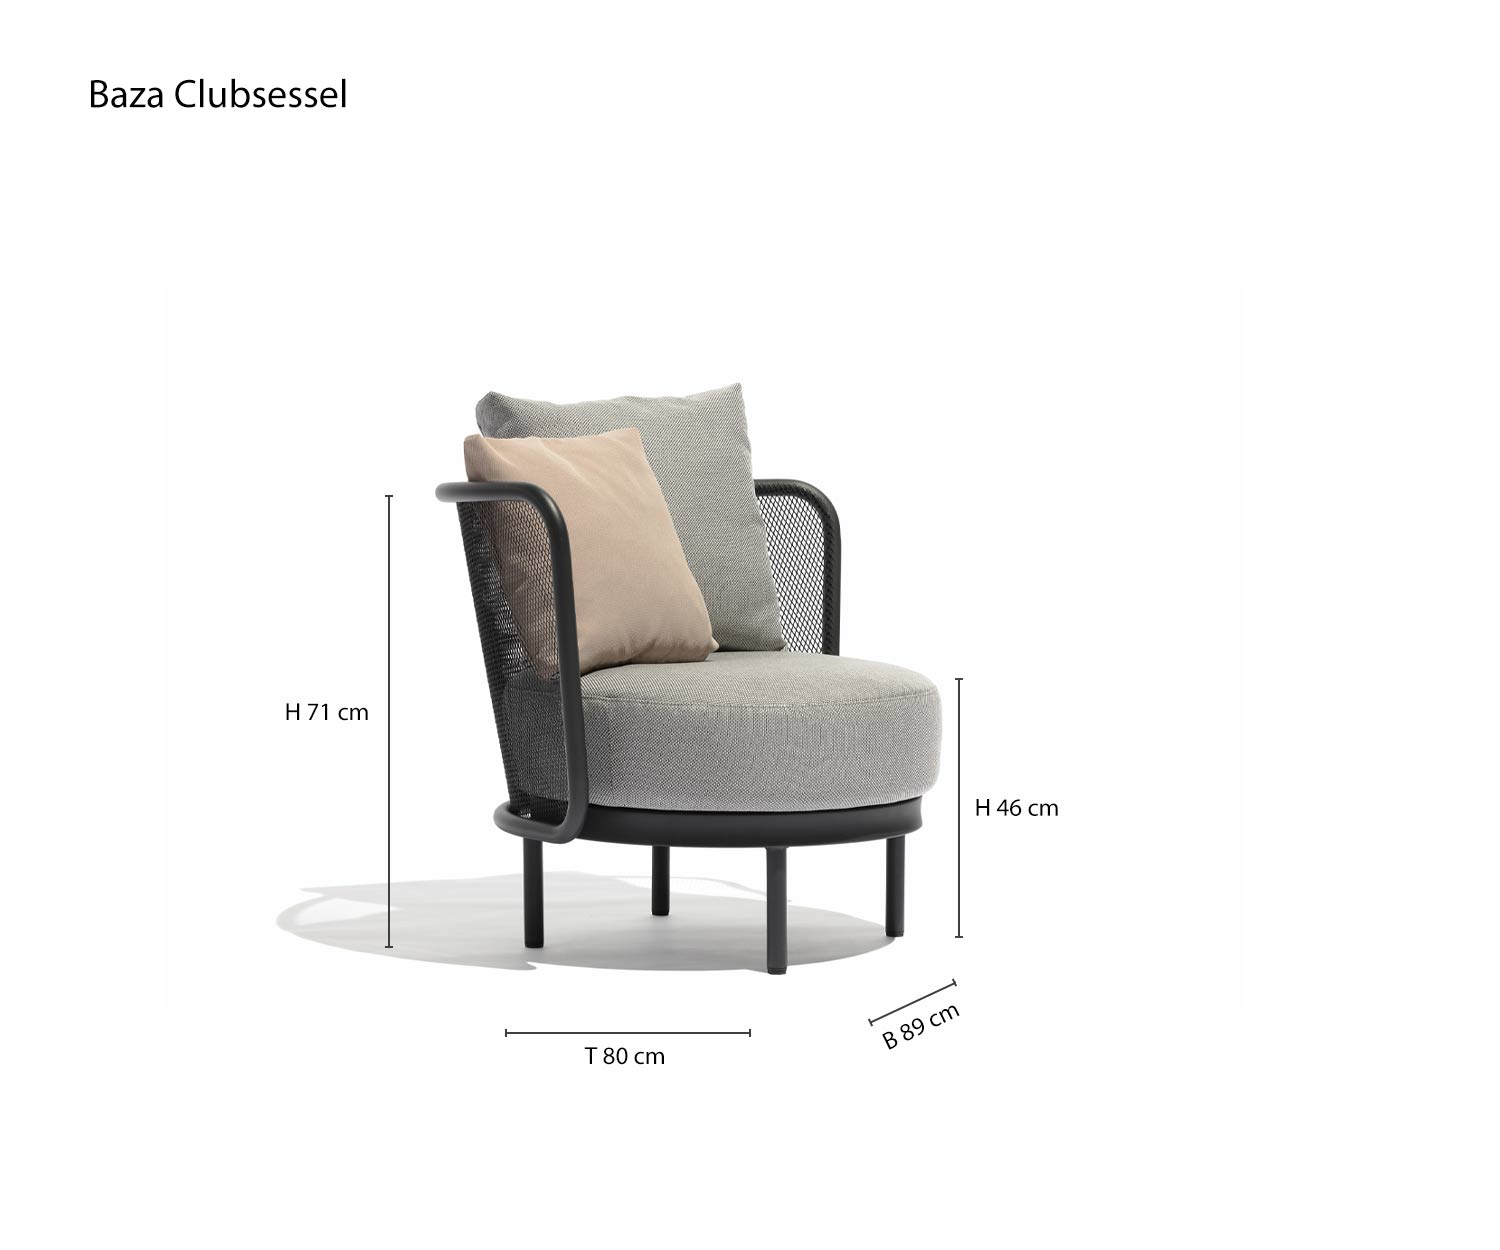 Baza Round garden armchair sketch Dimensions Sizes Size information